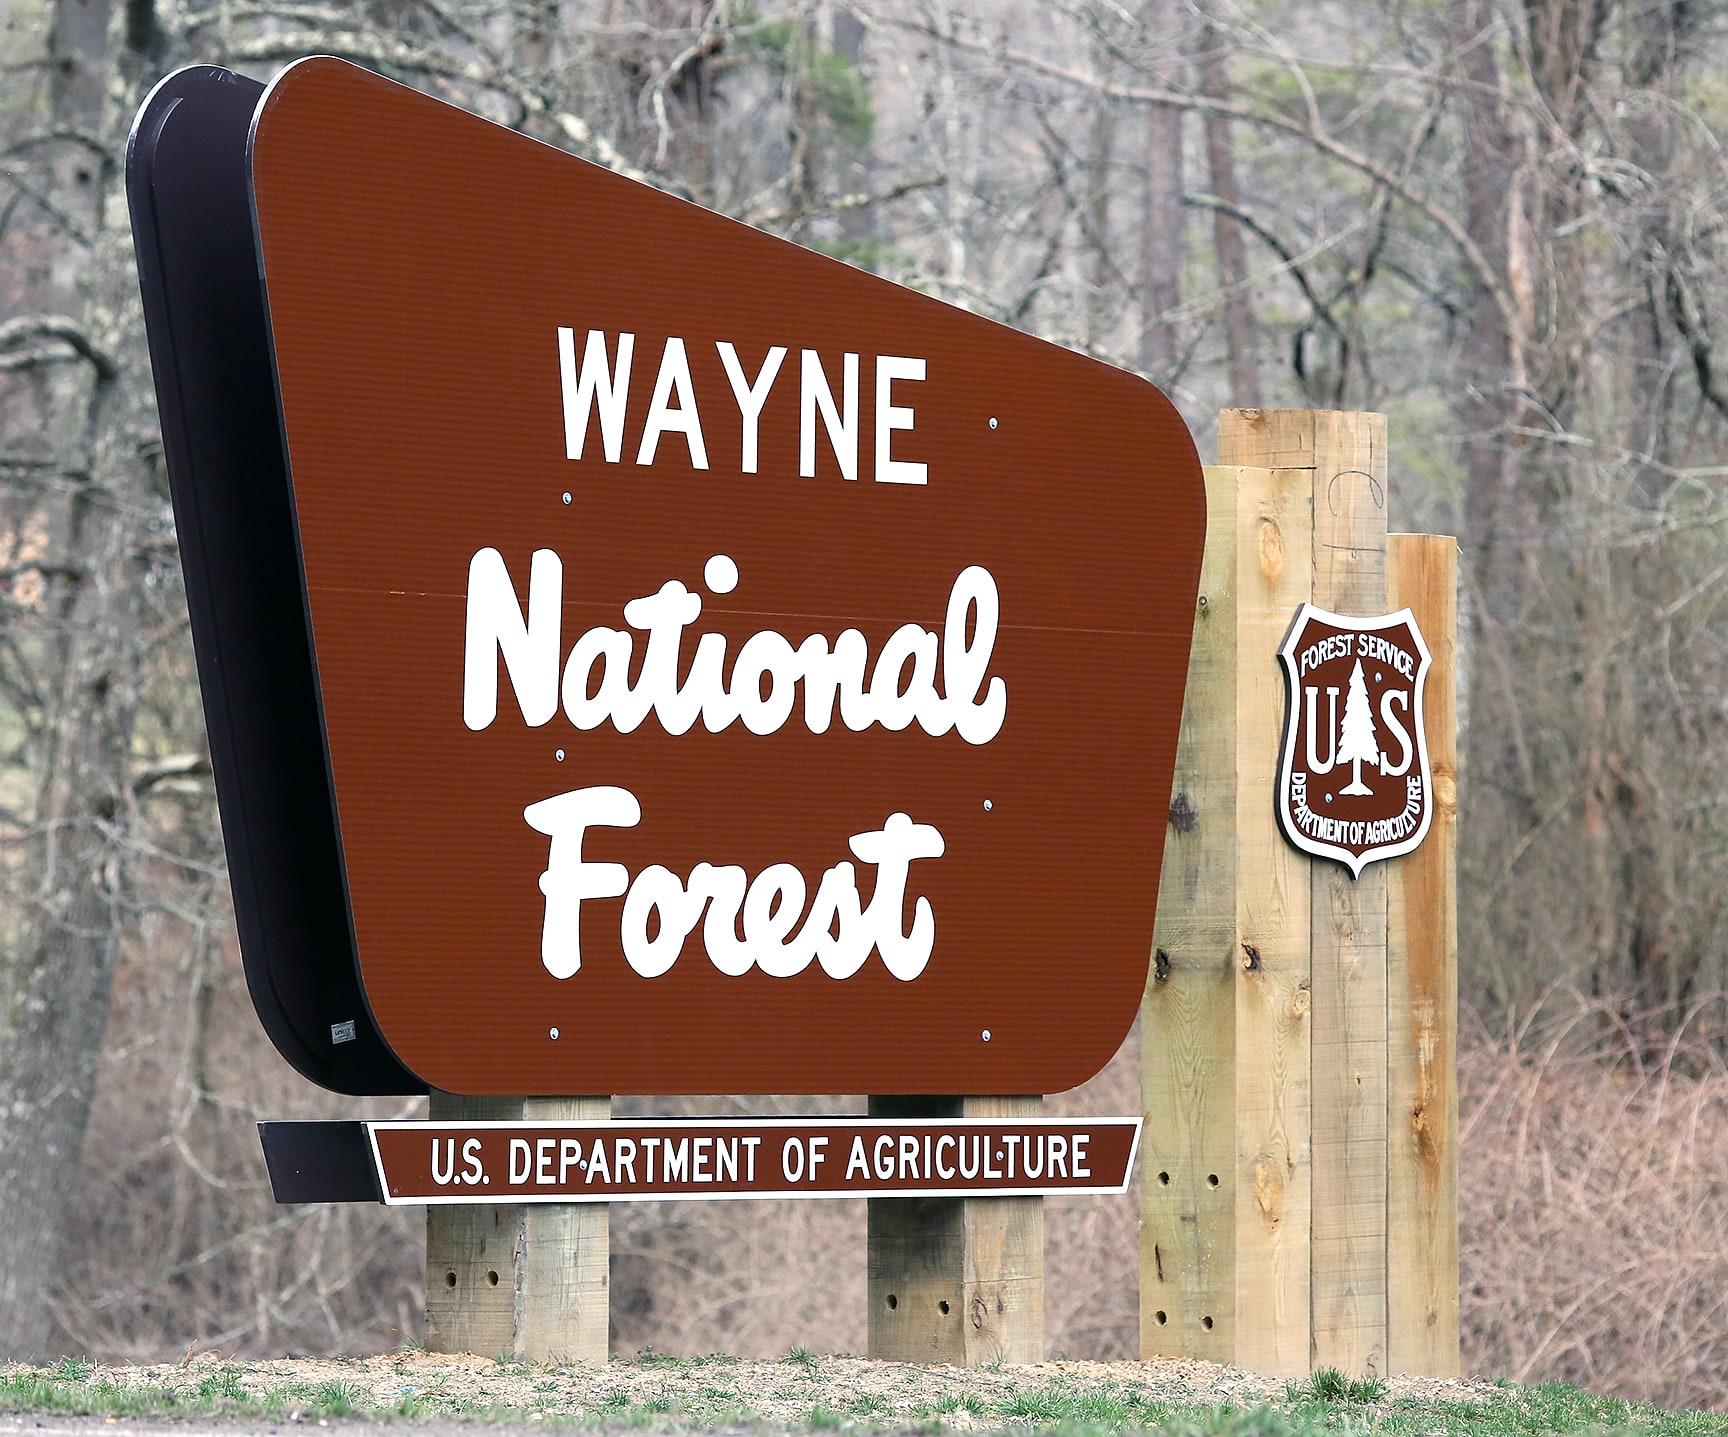 Wayne National Forest, Stany Zjednoczone